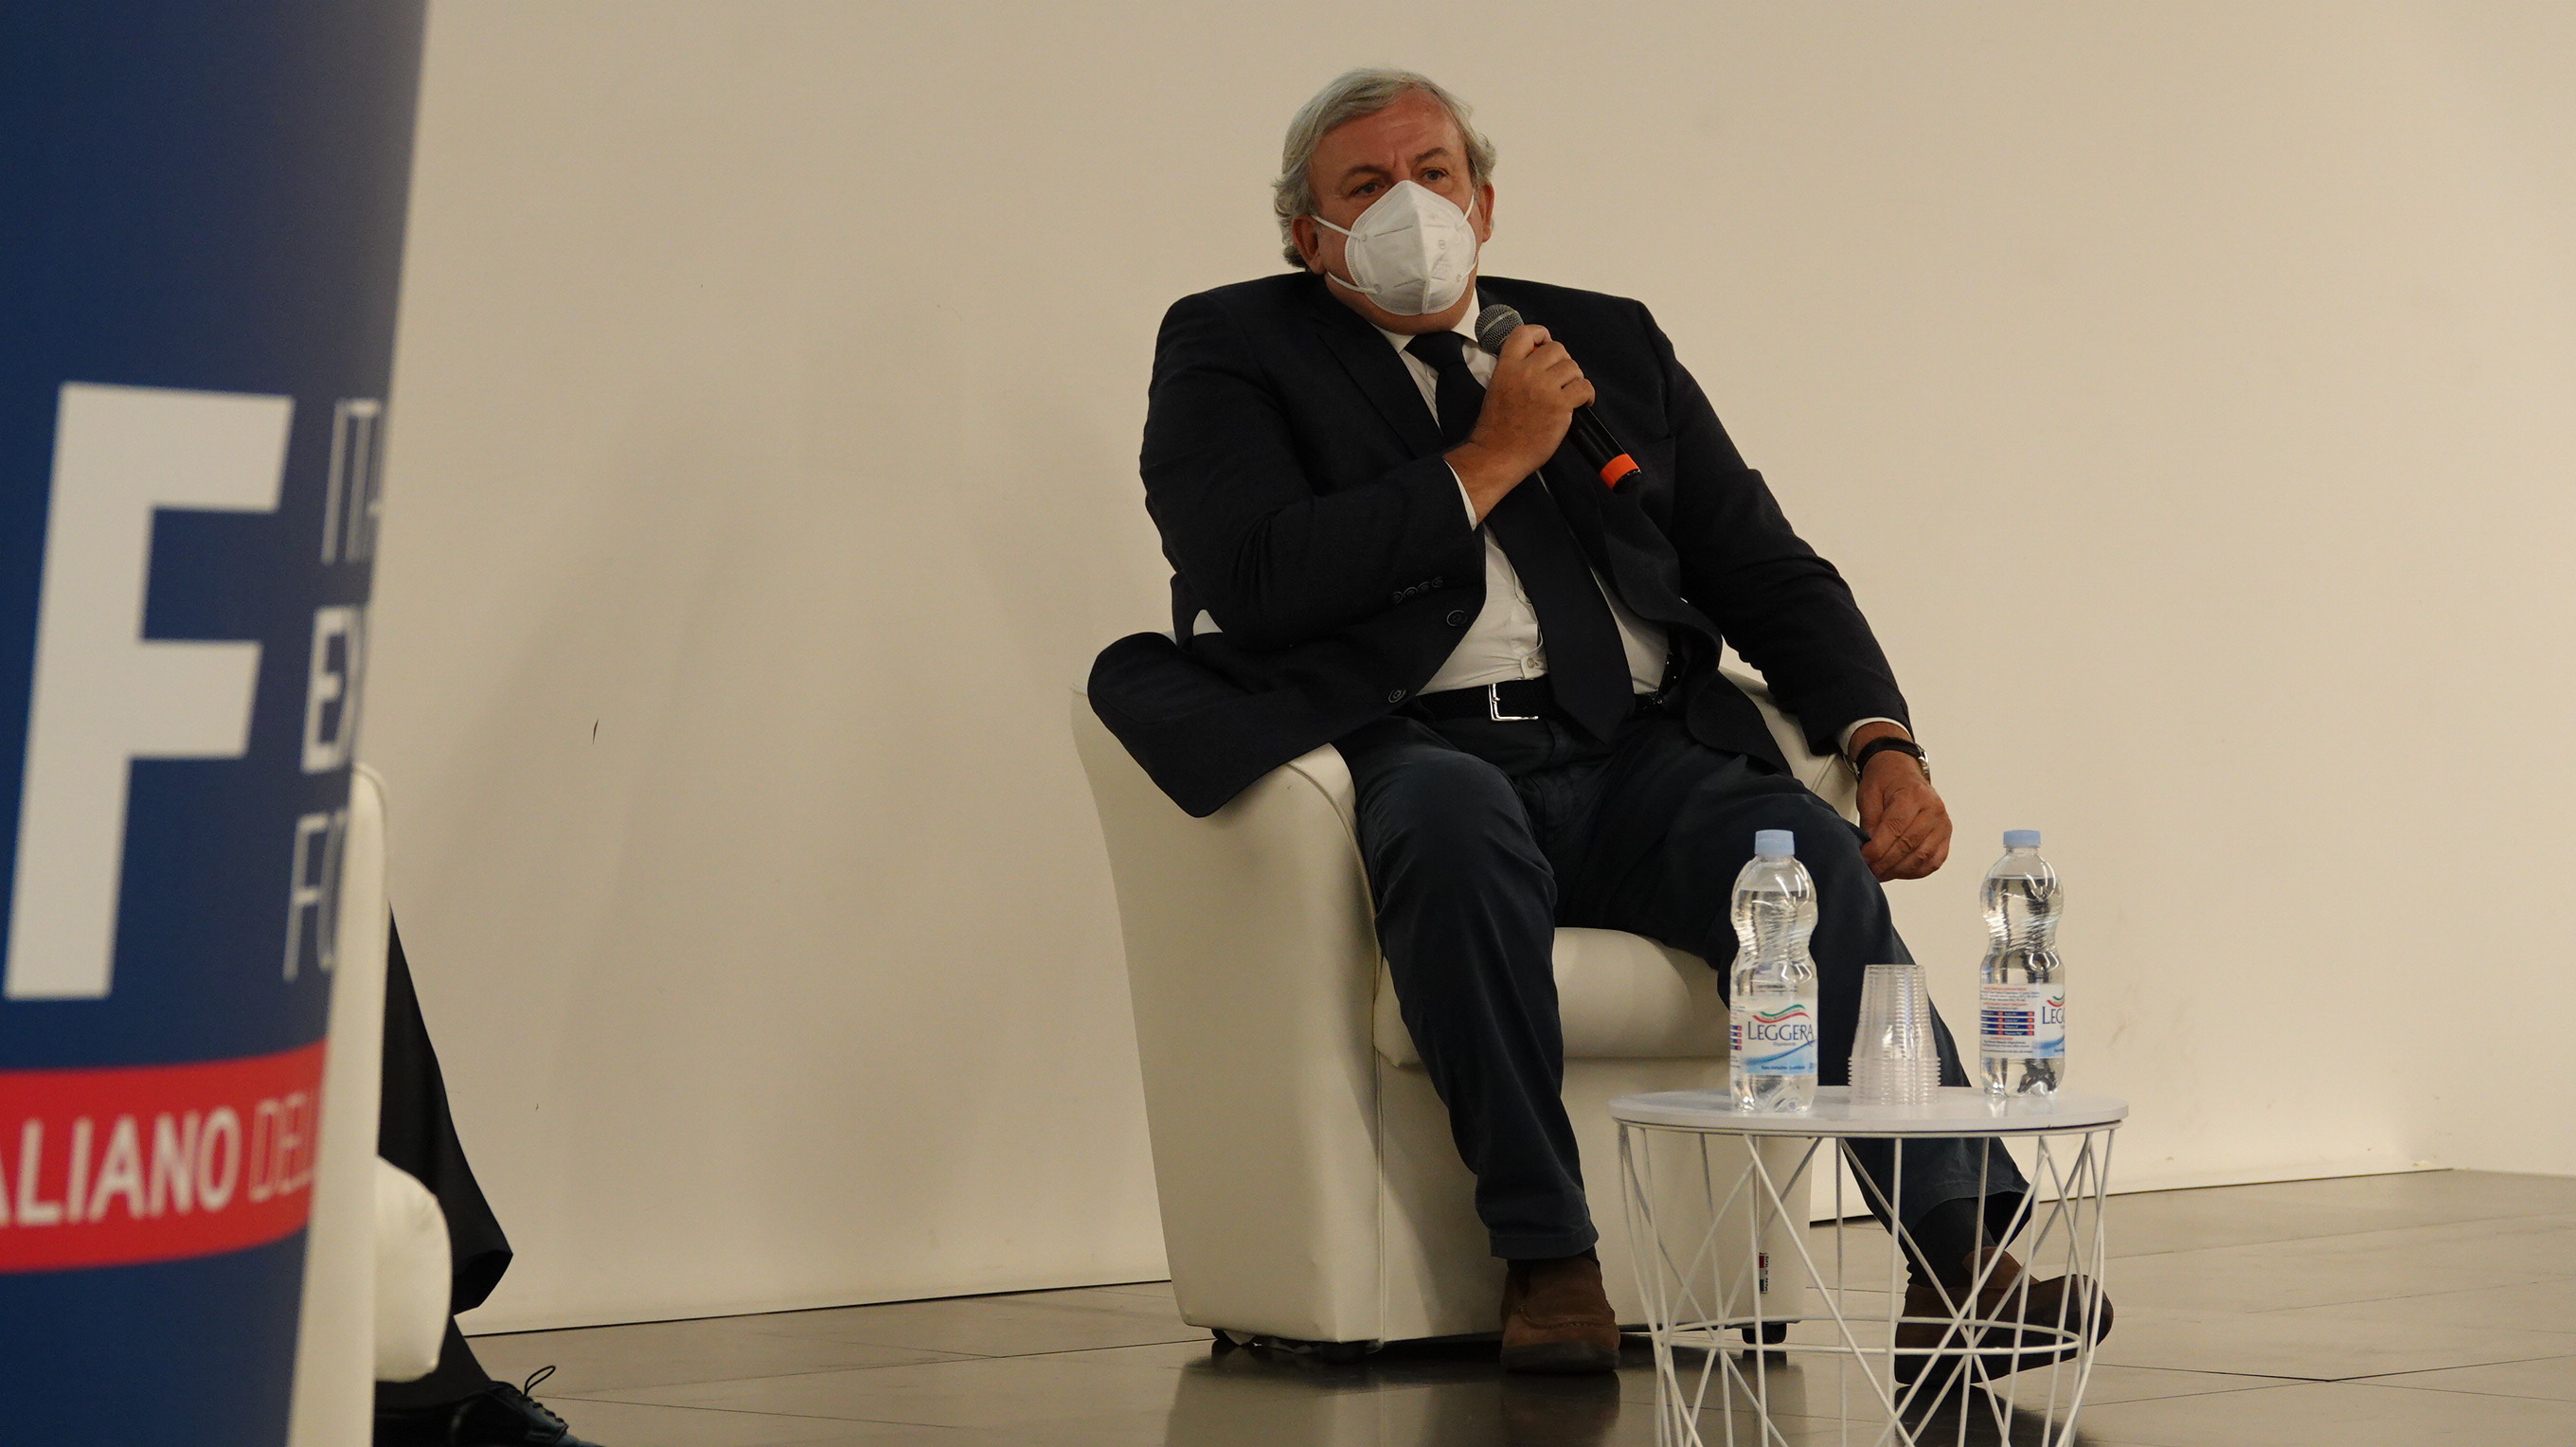 Galleria FdL 2020, Forum italiano dell'export, Emiliano in Fiera con il ministro Di Maio - Diapositiva 1 di 10